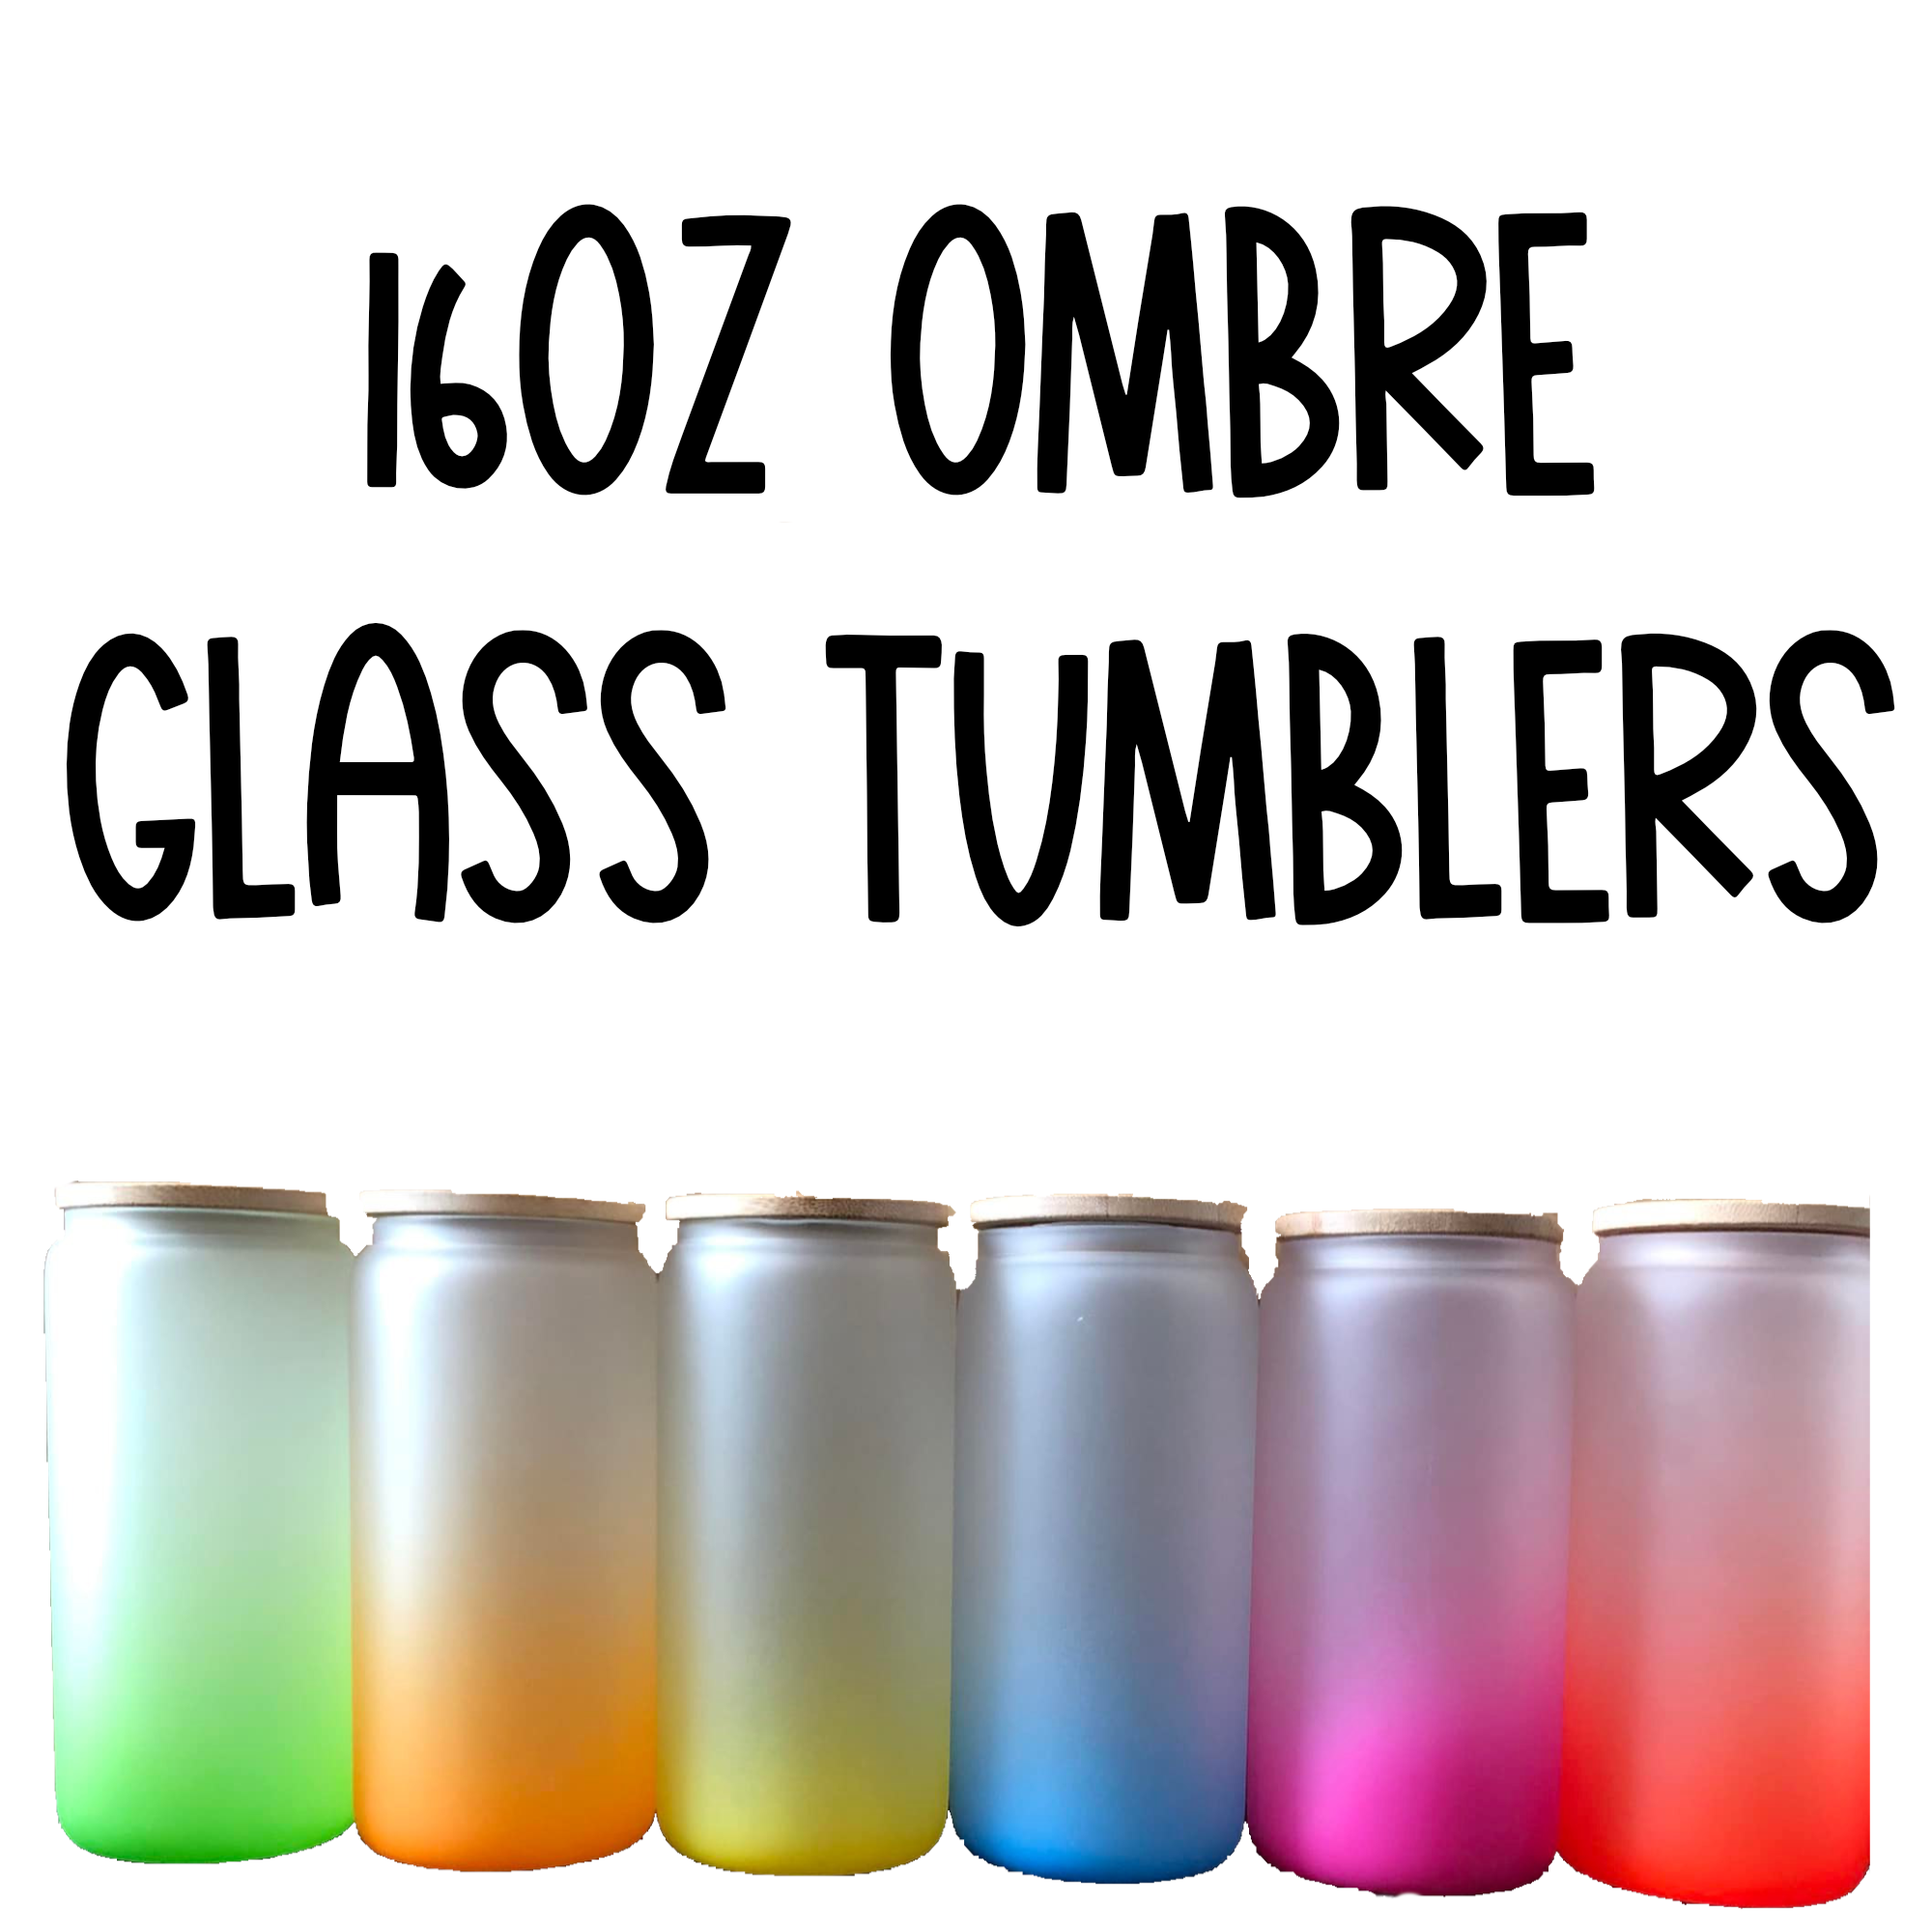 16oz Tumbler Glass